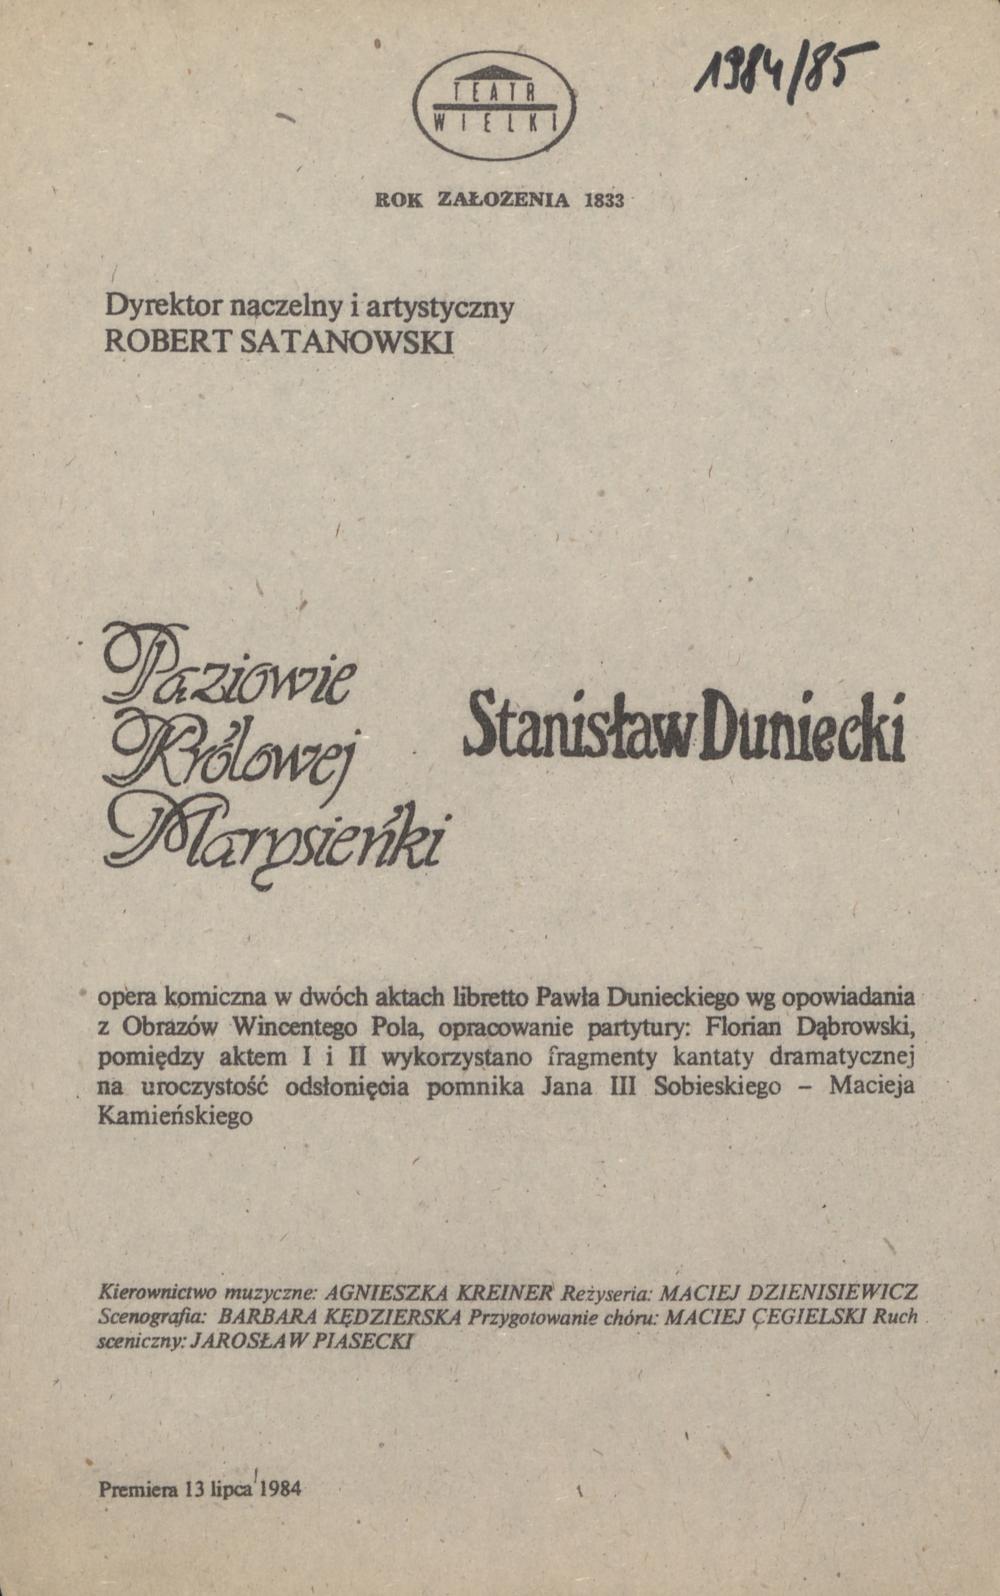 Wkładka Obsadowa „Paziowie Królowej Marysieńki” Stanisław Duniecki 24-03-1985